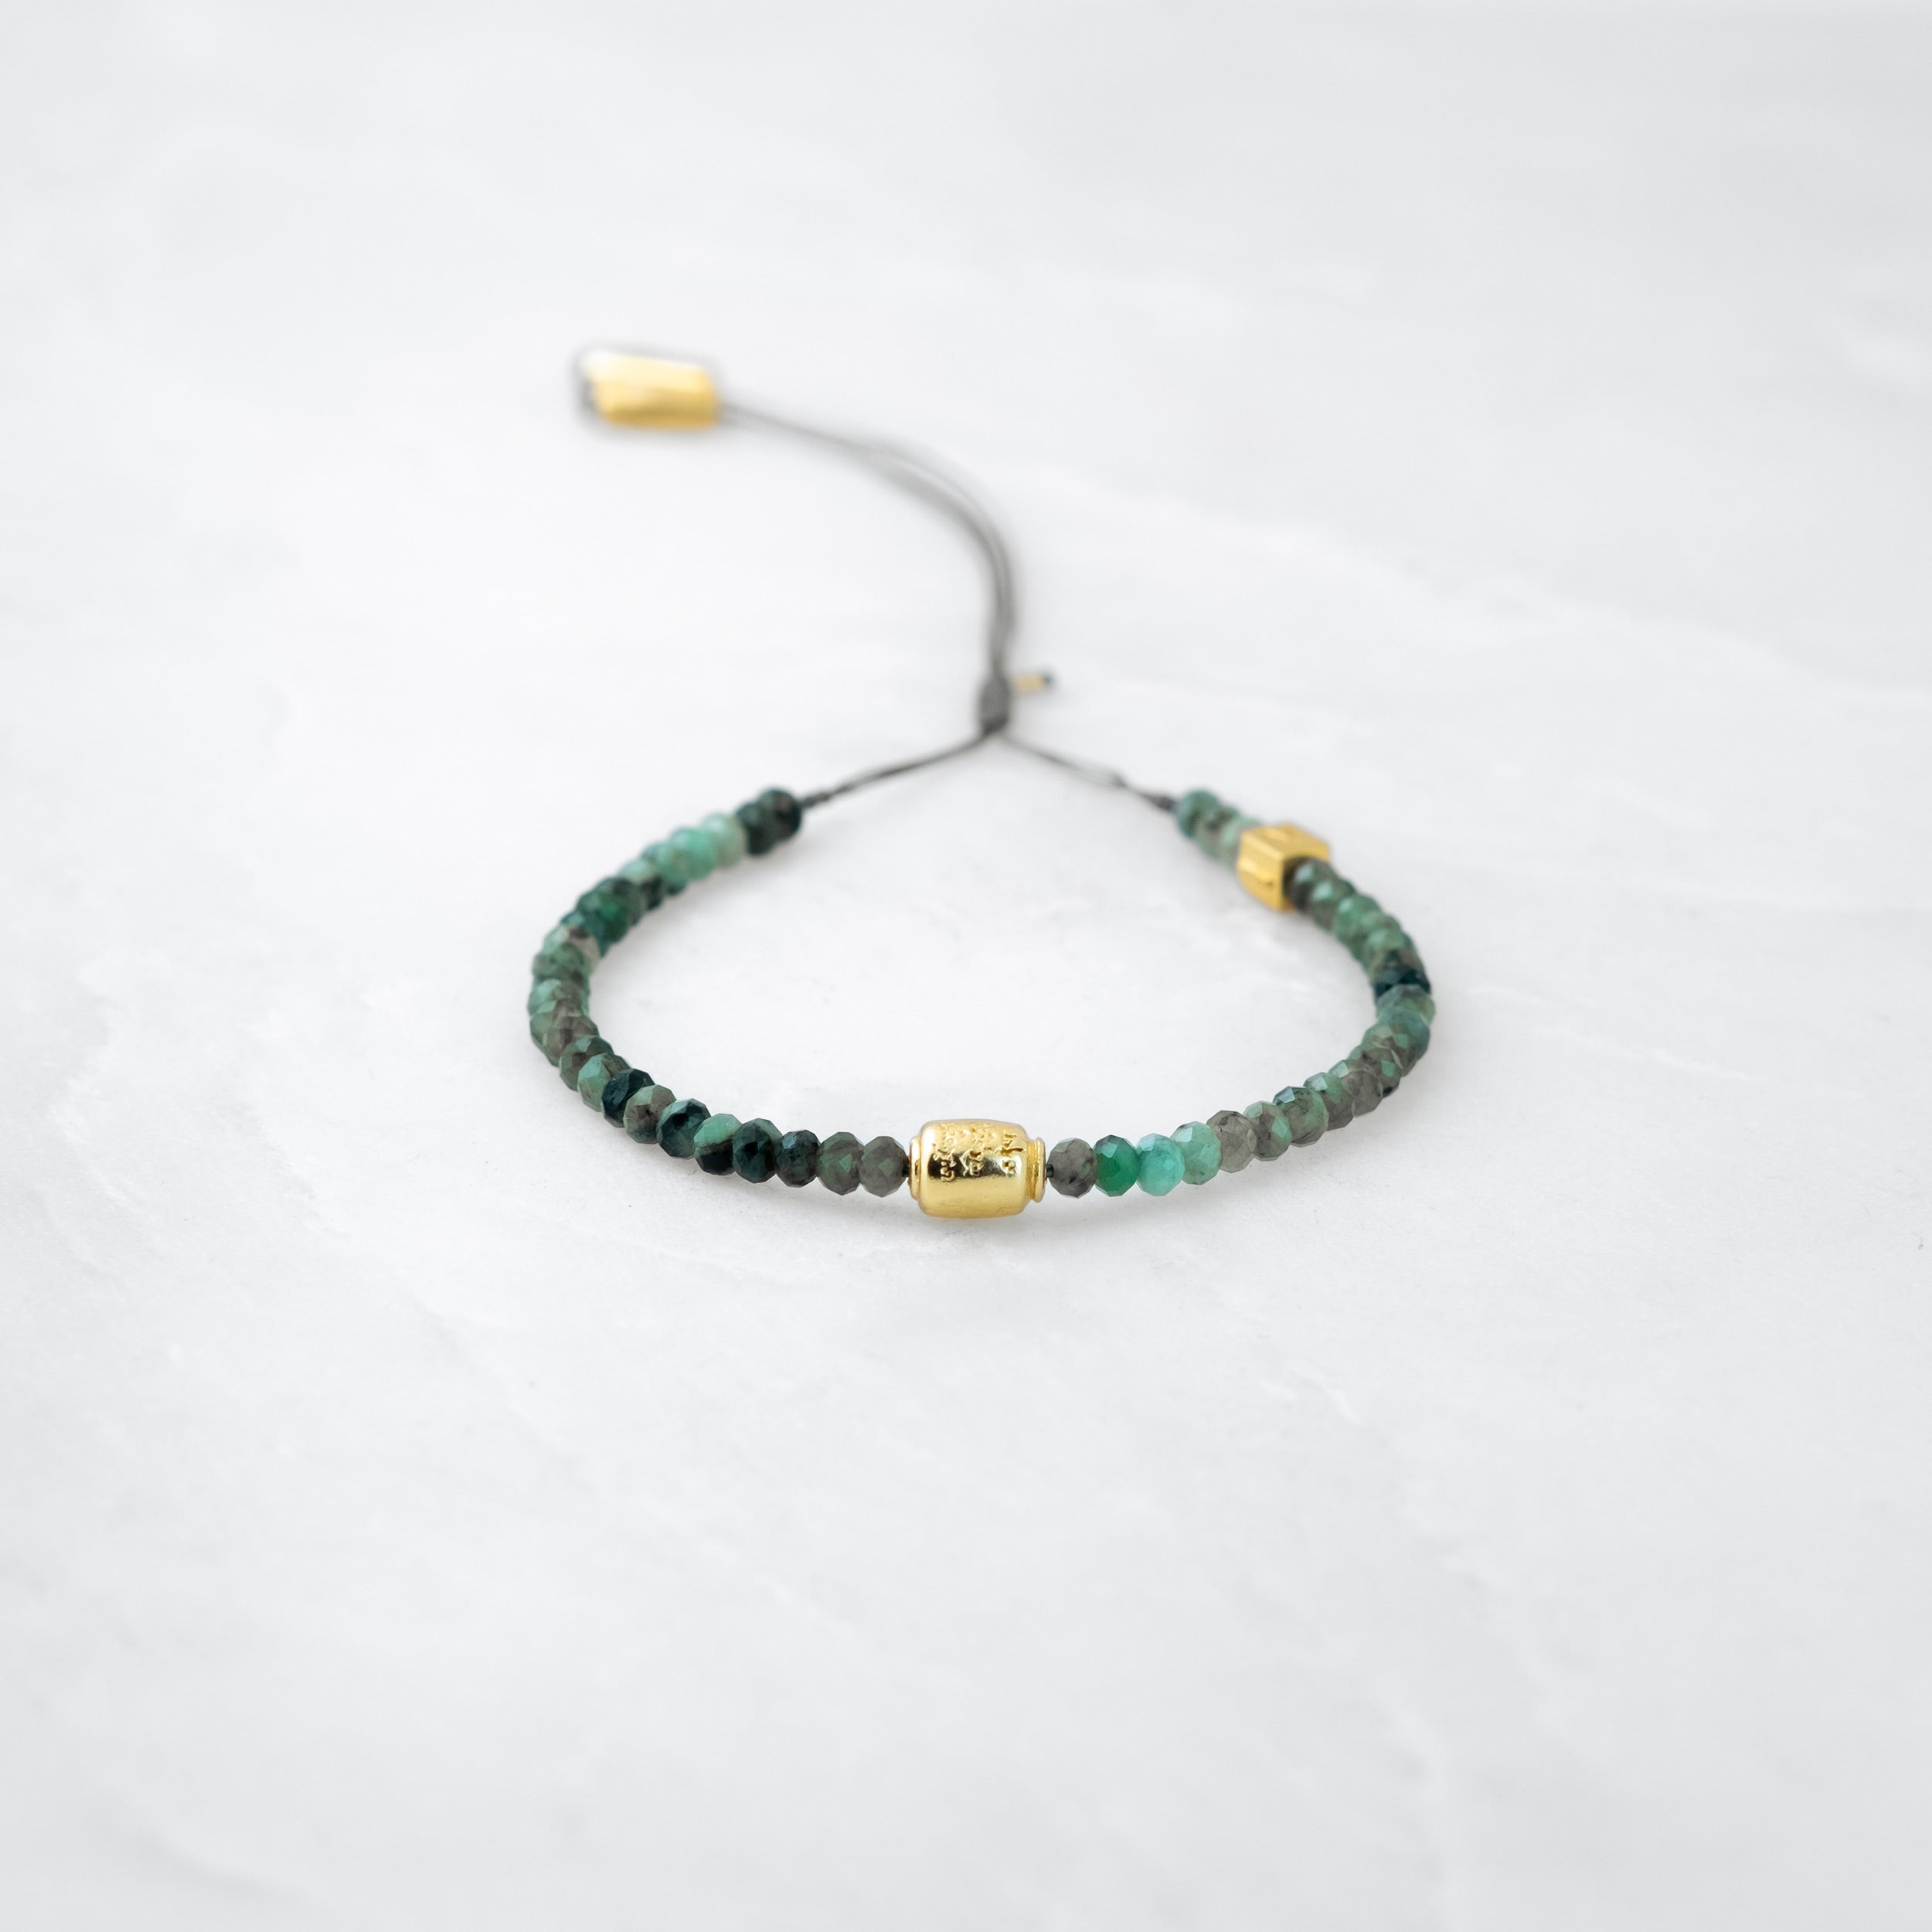 MALA PRECIEUX bracelet - Emerald, golden Manikorlo